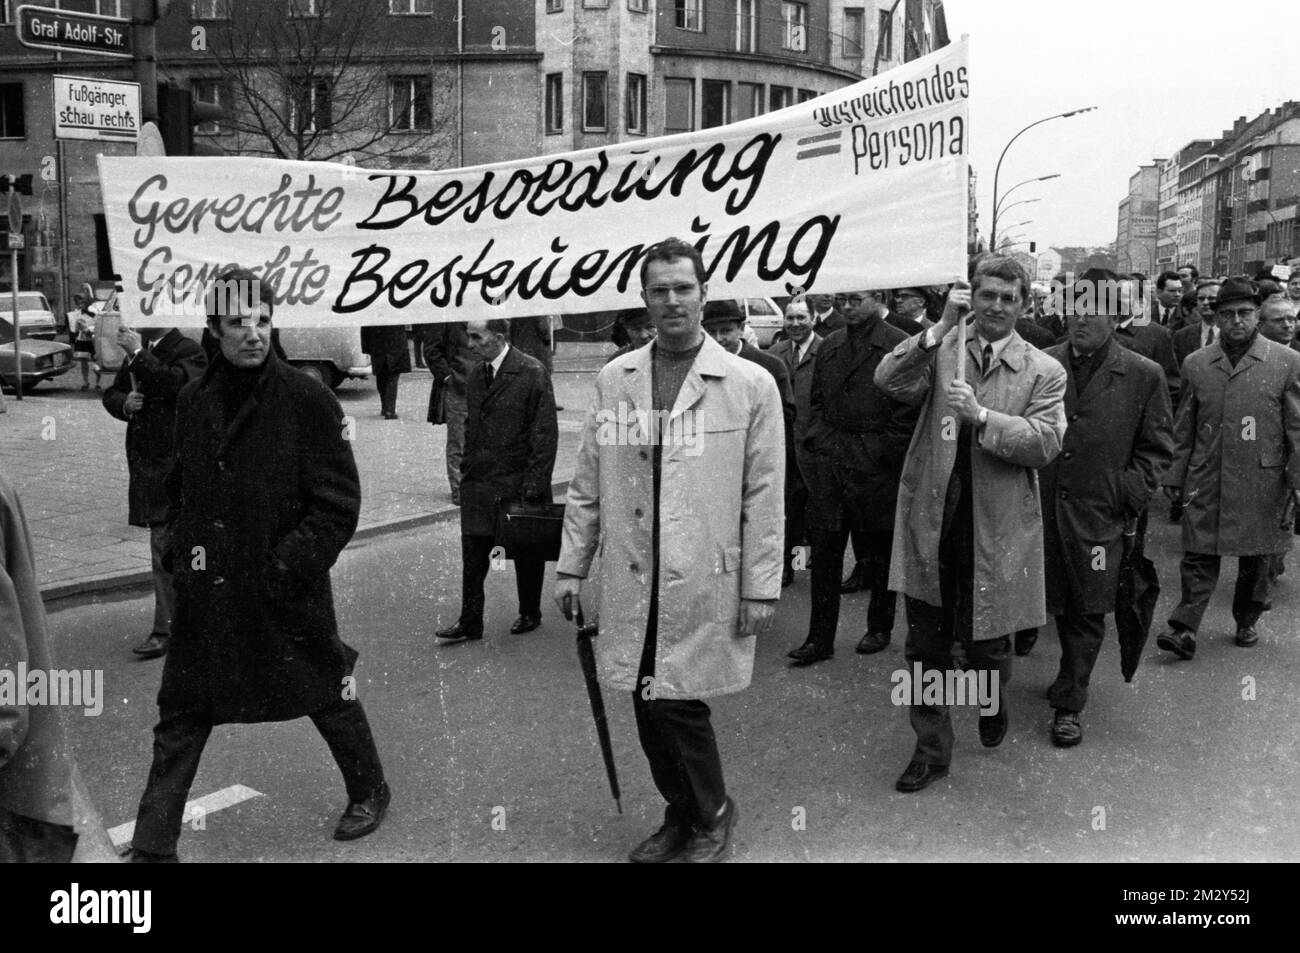 Les responsables des impôts descendent aussi dans la rue pour leur demande de plus de salaire, comme ici à Düsseldorf en 1969, en Allemagne Banque D'Images